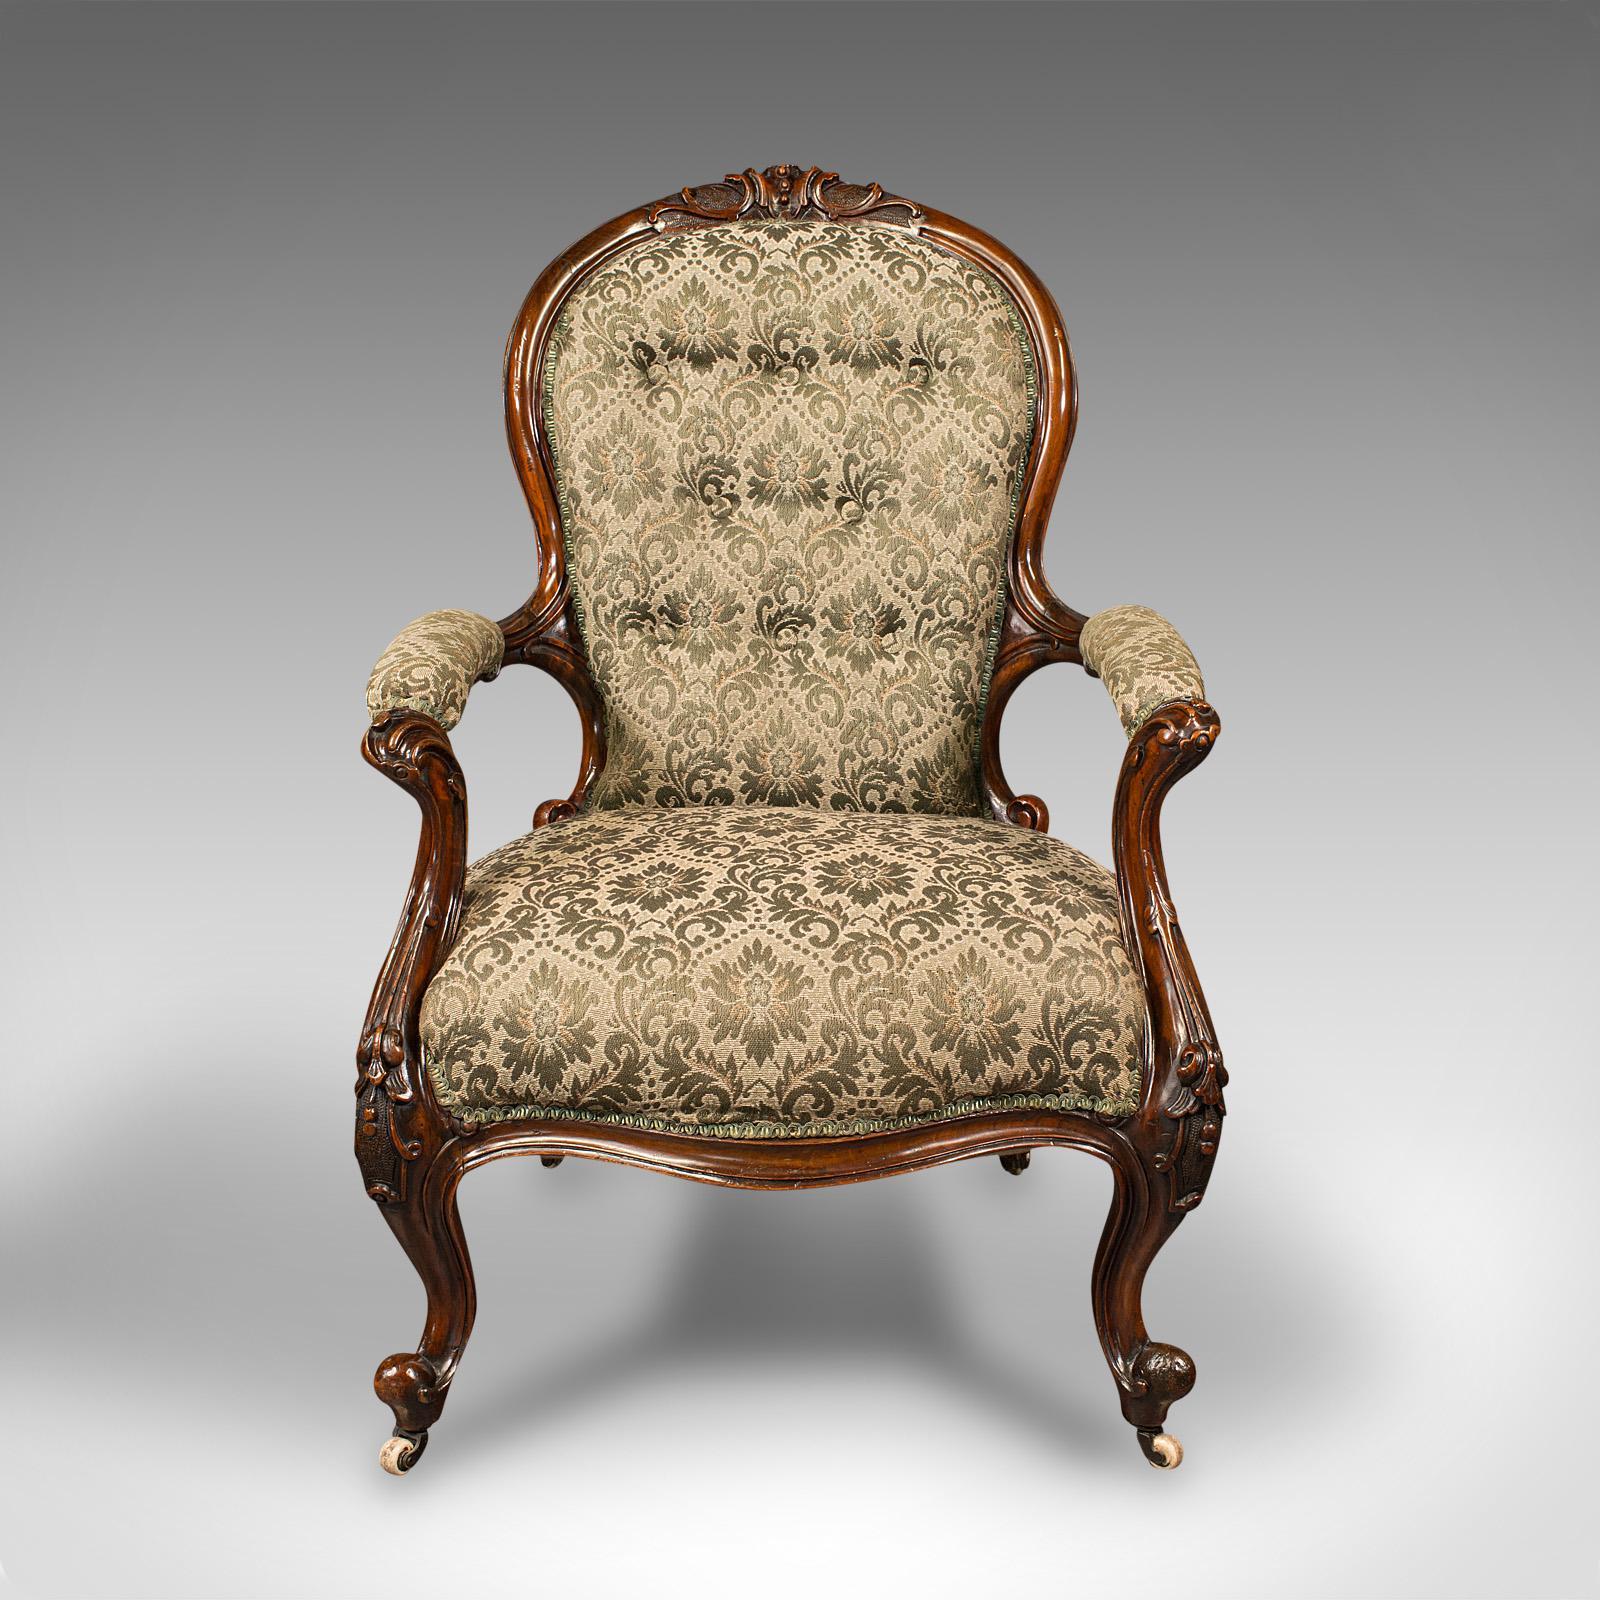 Il s'agit d'un fauteuil de salon ancien. Fauteuil anglais en noyer datant du début de la période victorienne, vers 1840.

Fauteuil de salon magnifiquement conçu pour la détente, le salon ou le coin du feu
Présente une patine d'usage désirable et